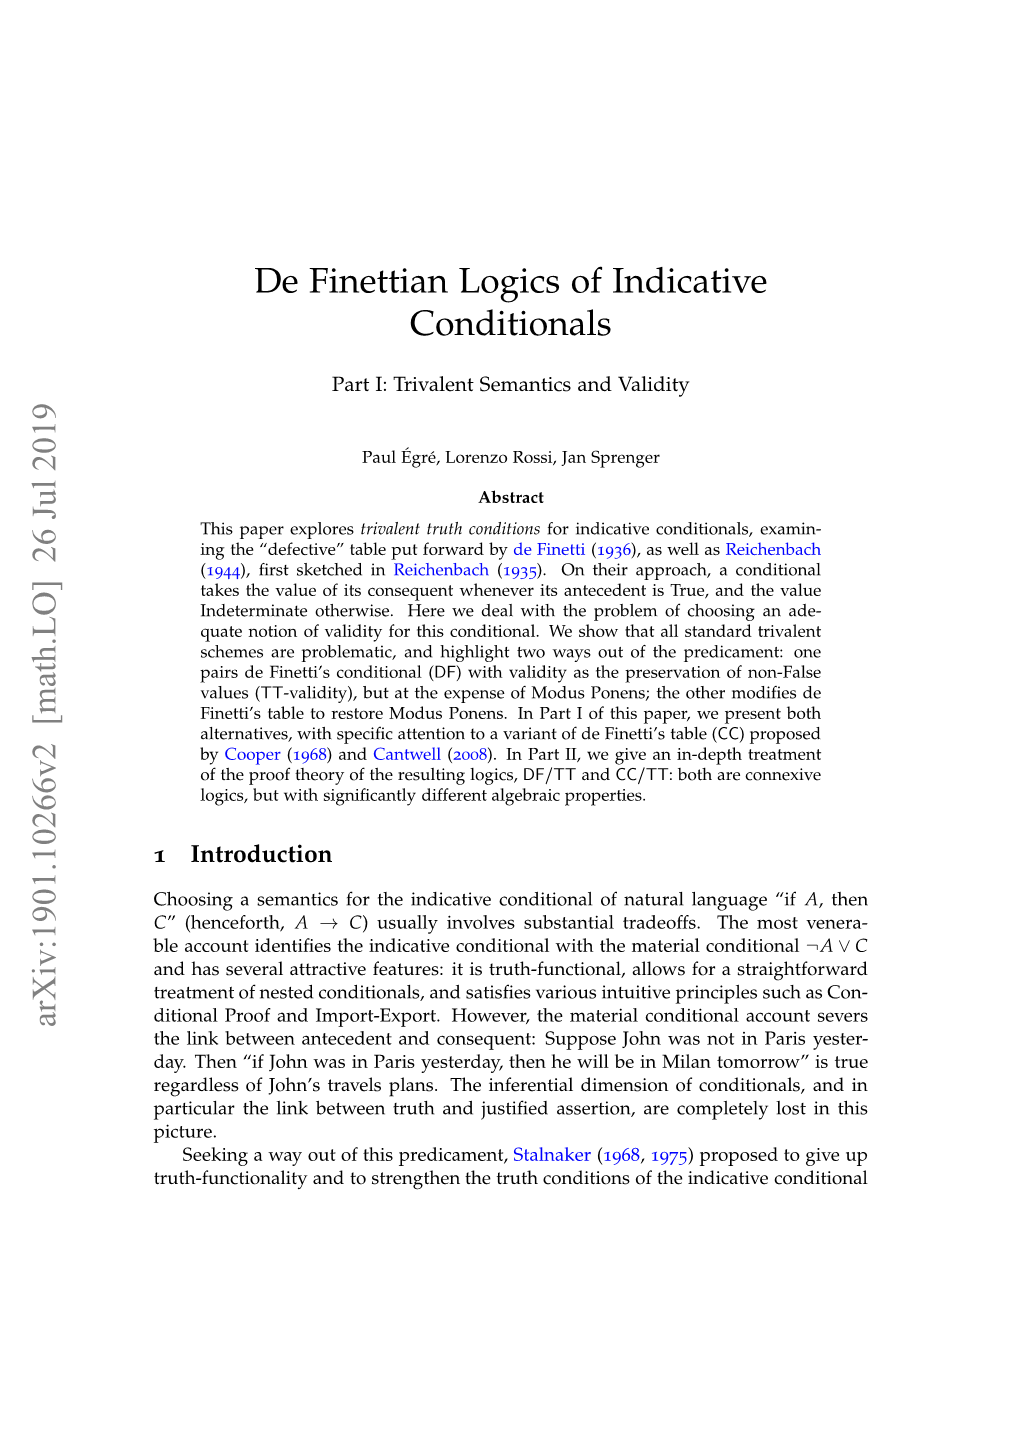 De Finettian Logics of Indicative Conditionals